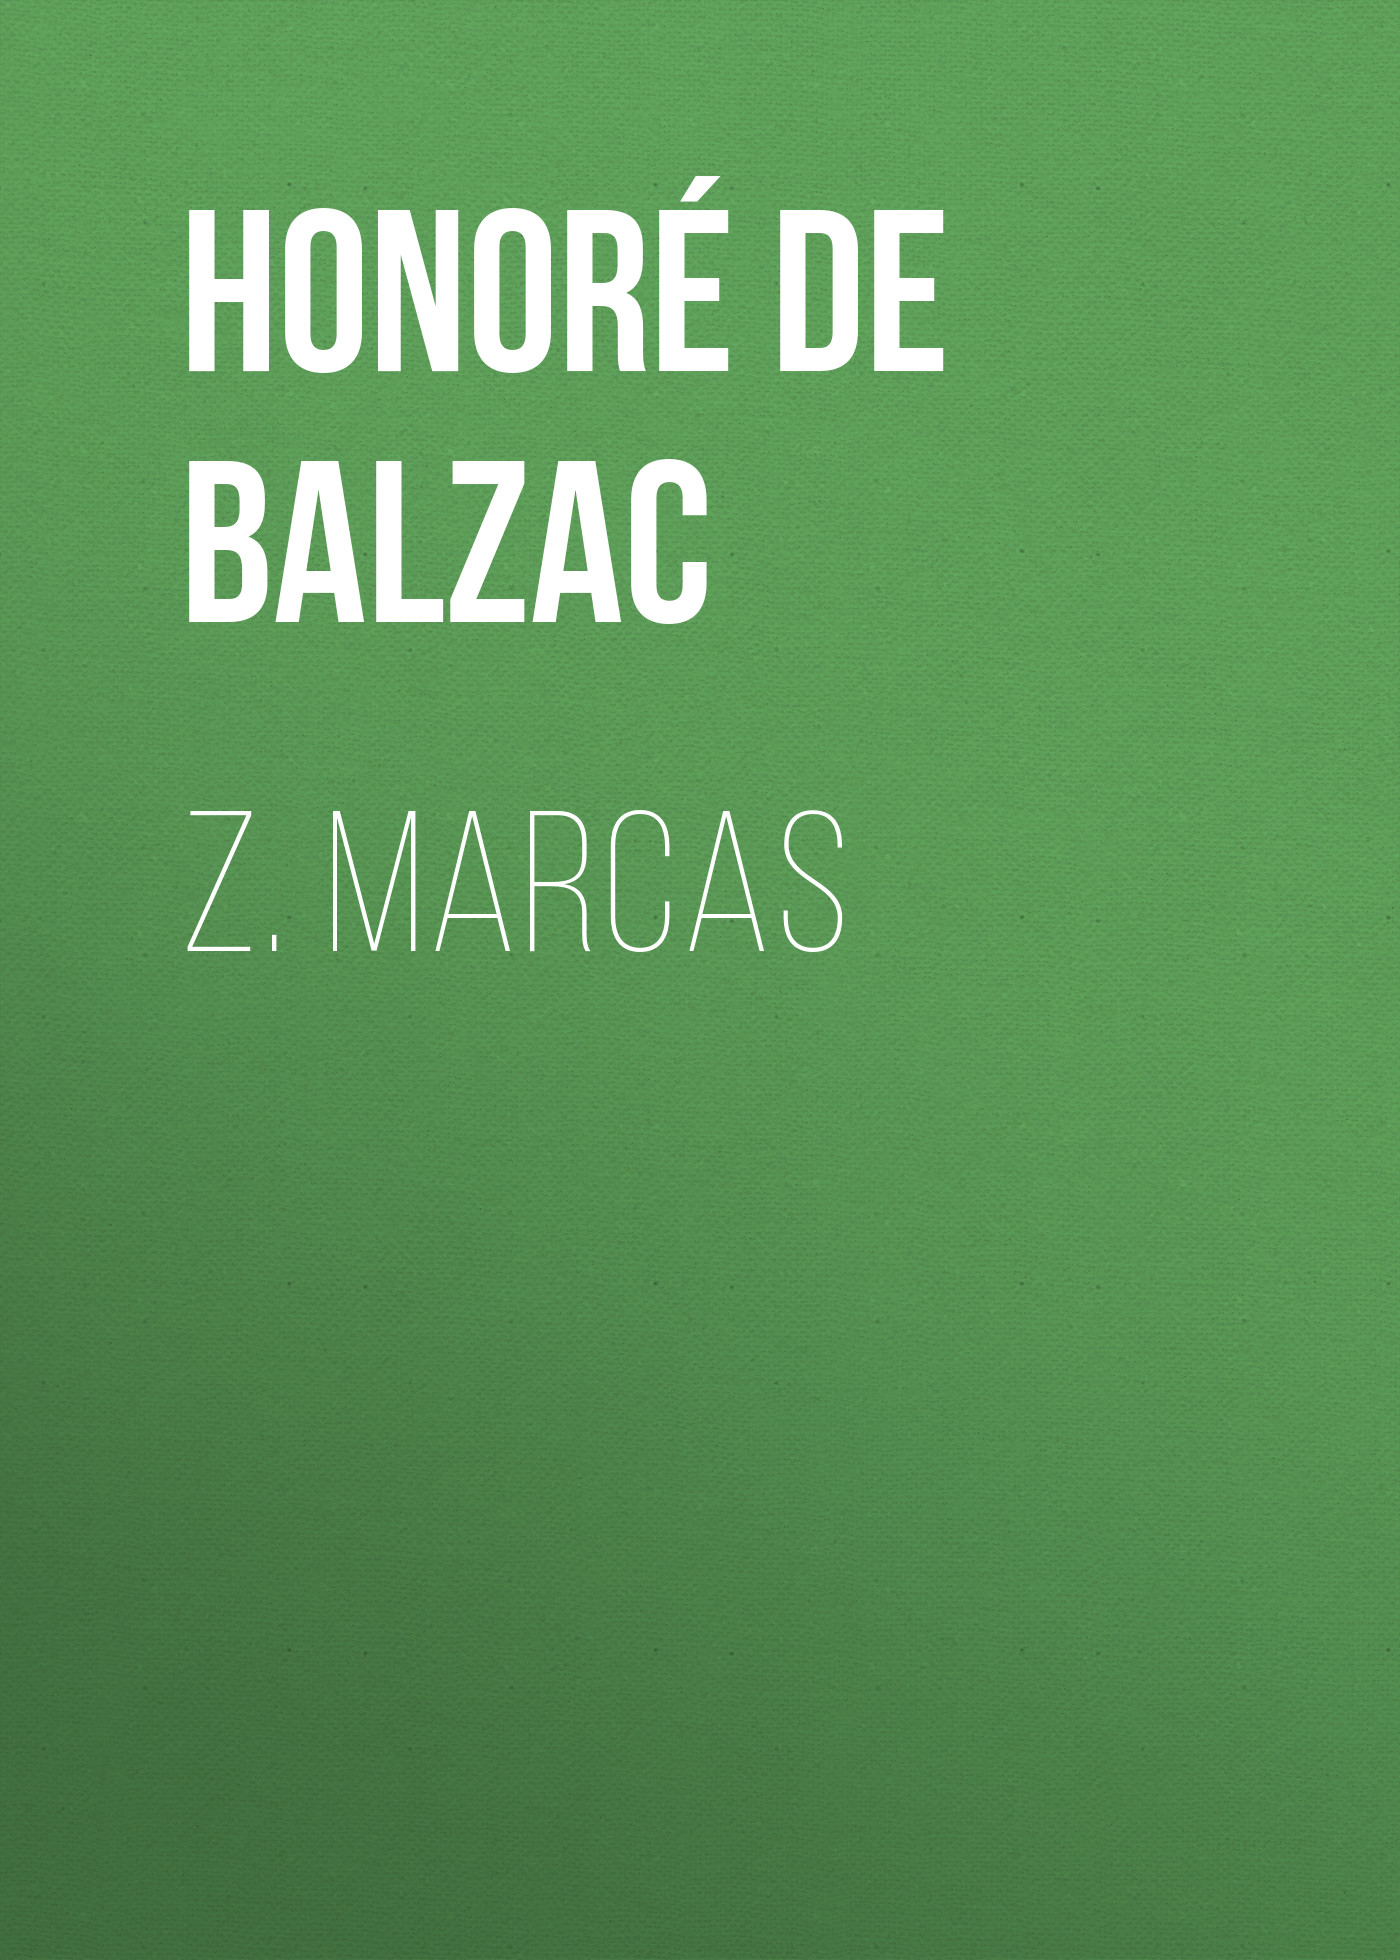 Книга Z. Marcas из серии , созданная Honoré Balzac, может относится к жанру Литература 19 века, Зарубежная старинная литература, Зарубежная классика. Стоимость электронной книги Z. Marcas с идентификатором 25020691 составляет 0 руб.